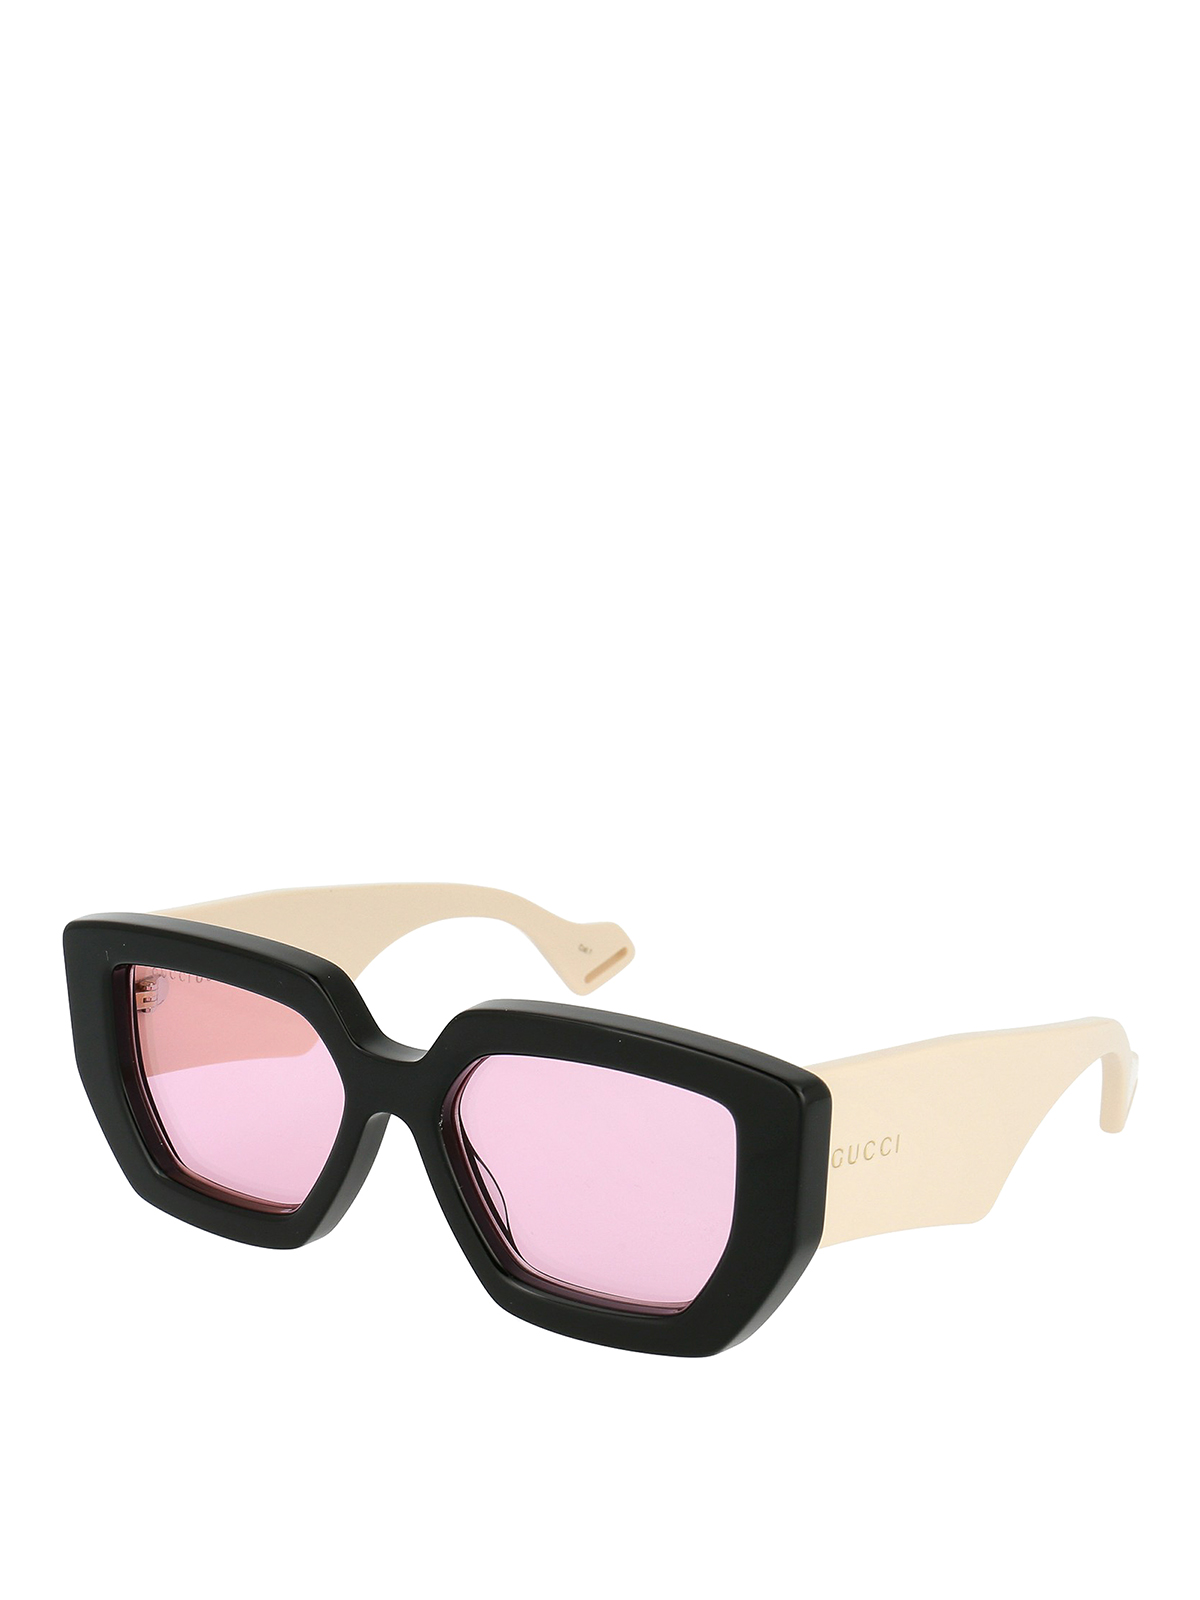 Maxi temples pink lenses sunglasses 